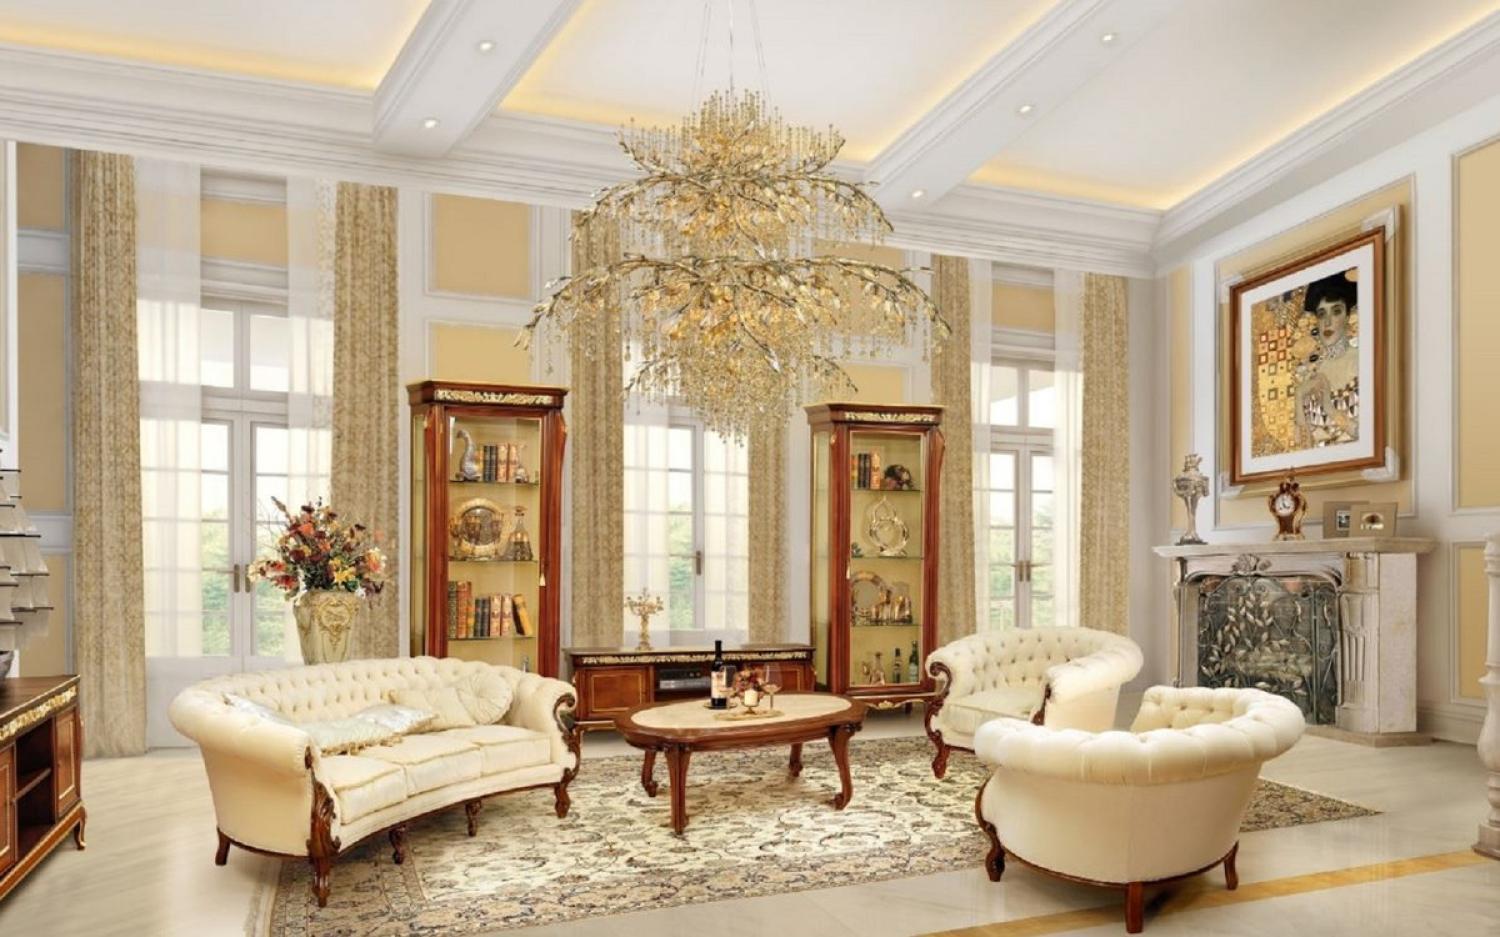 Casa Padrino Luxus Barock Wohnzimmer Set Creme / Braun - 2 Barock Sofas & 2 Barock Sessel & 1 Barock Couchtisch - Luxus Wohnzimmer Möbel im Barockstil - Edel & Prunkvoll Bild 1